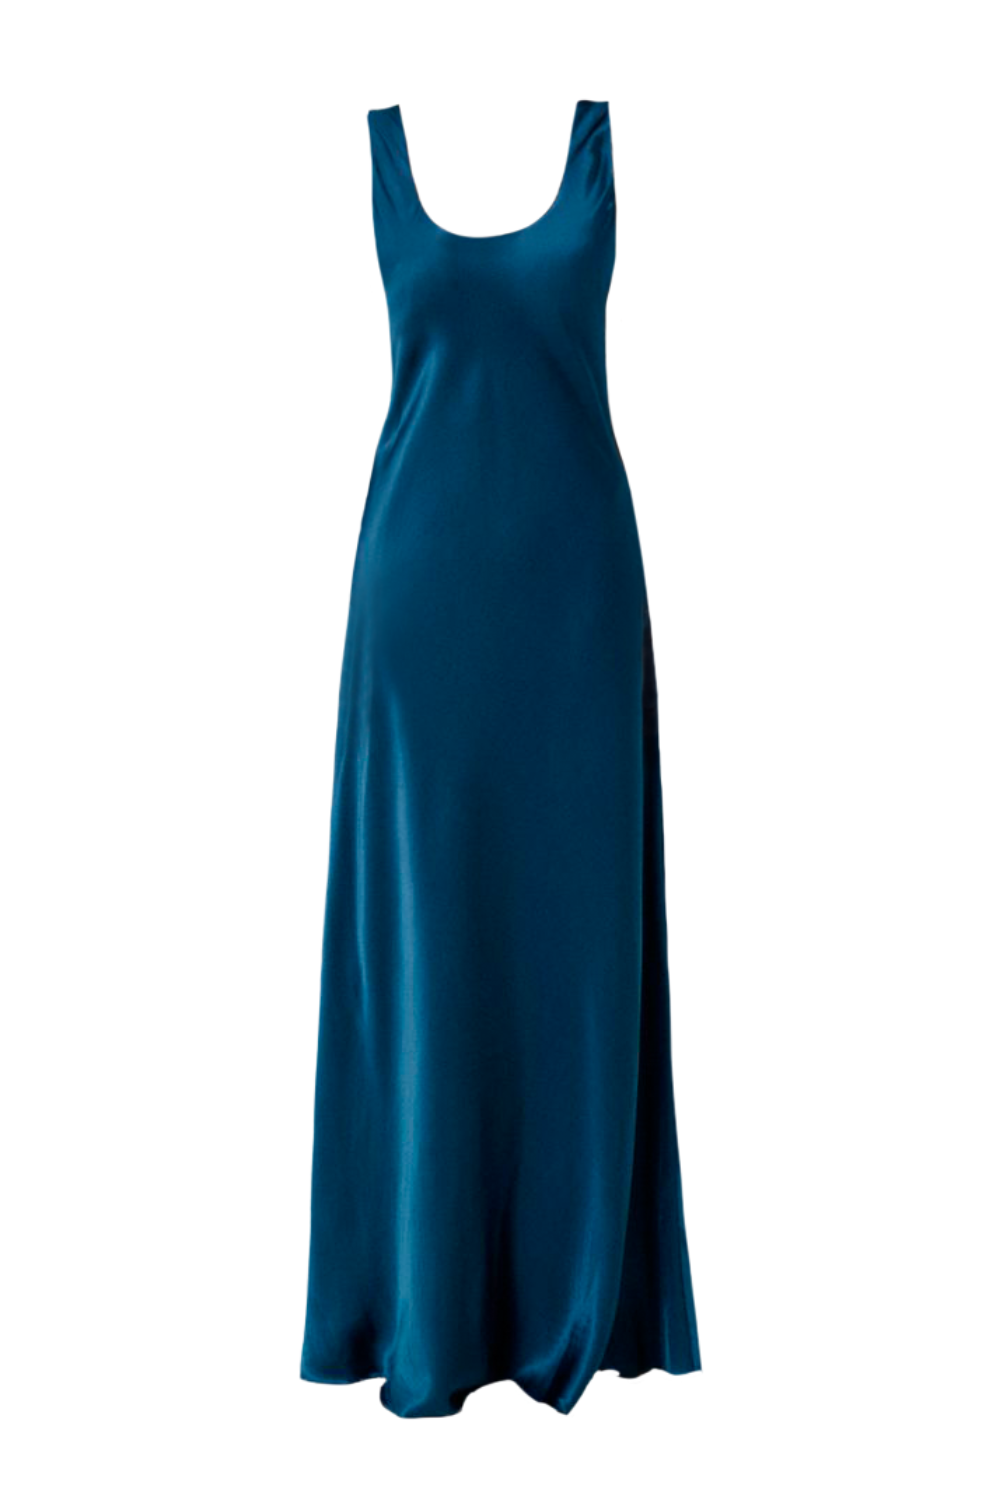 Šaty z viskózy v modrém odstínu 21-001